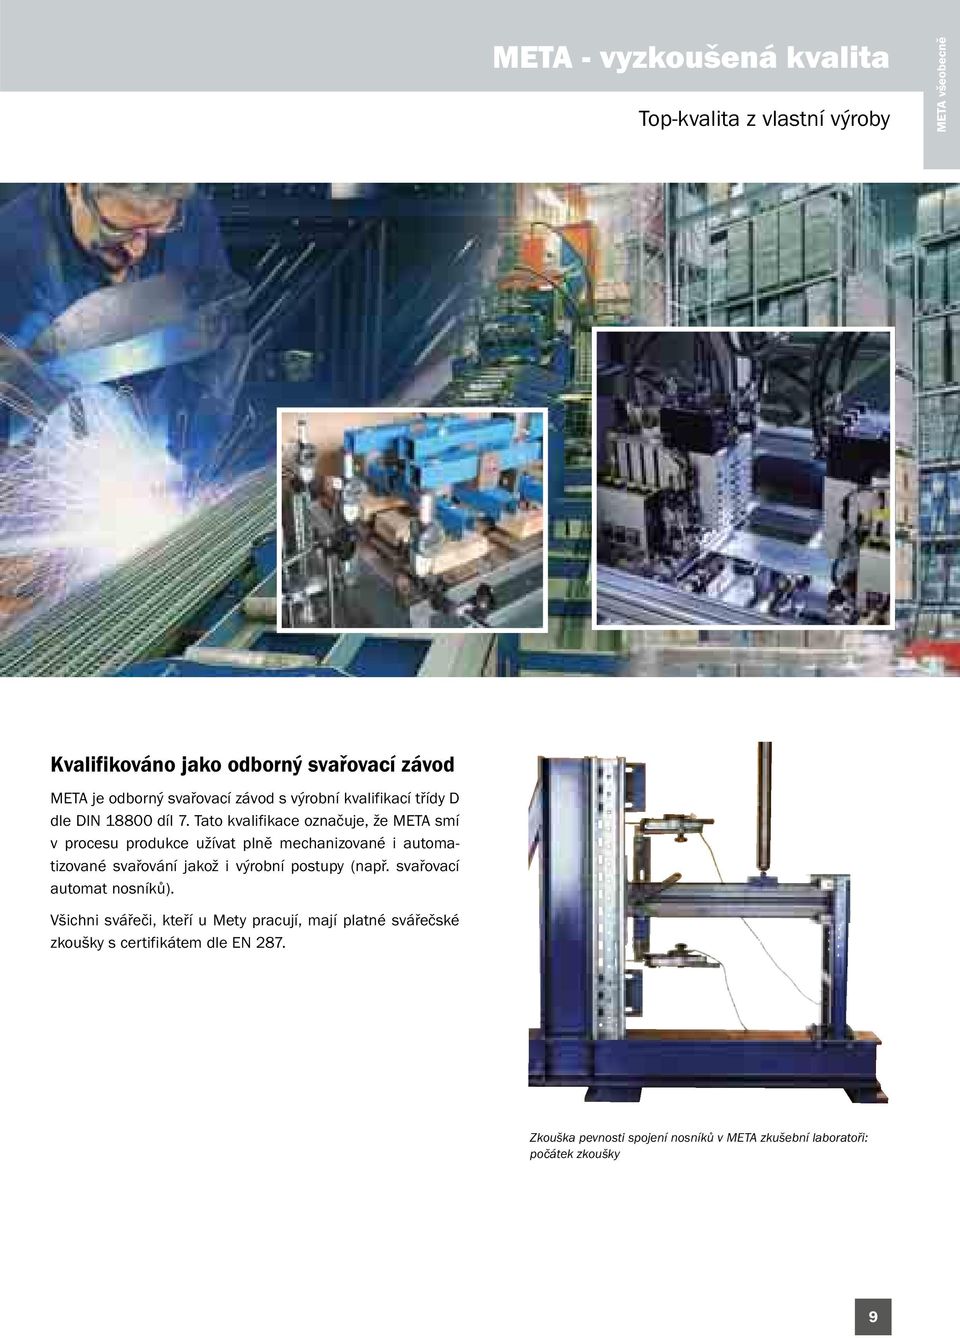 Tato kvalifikace označuje, že META smí v procesu produkce užívat plně mechanizované i automatizované svařování jakož i výrobní